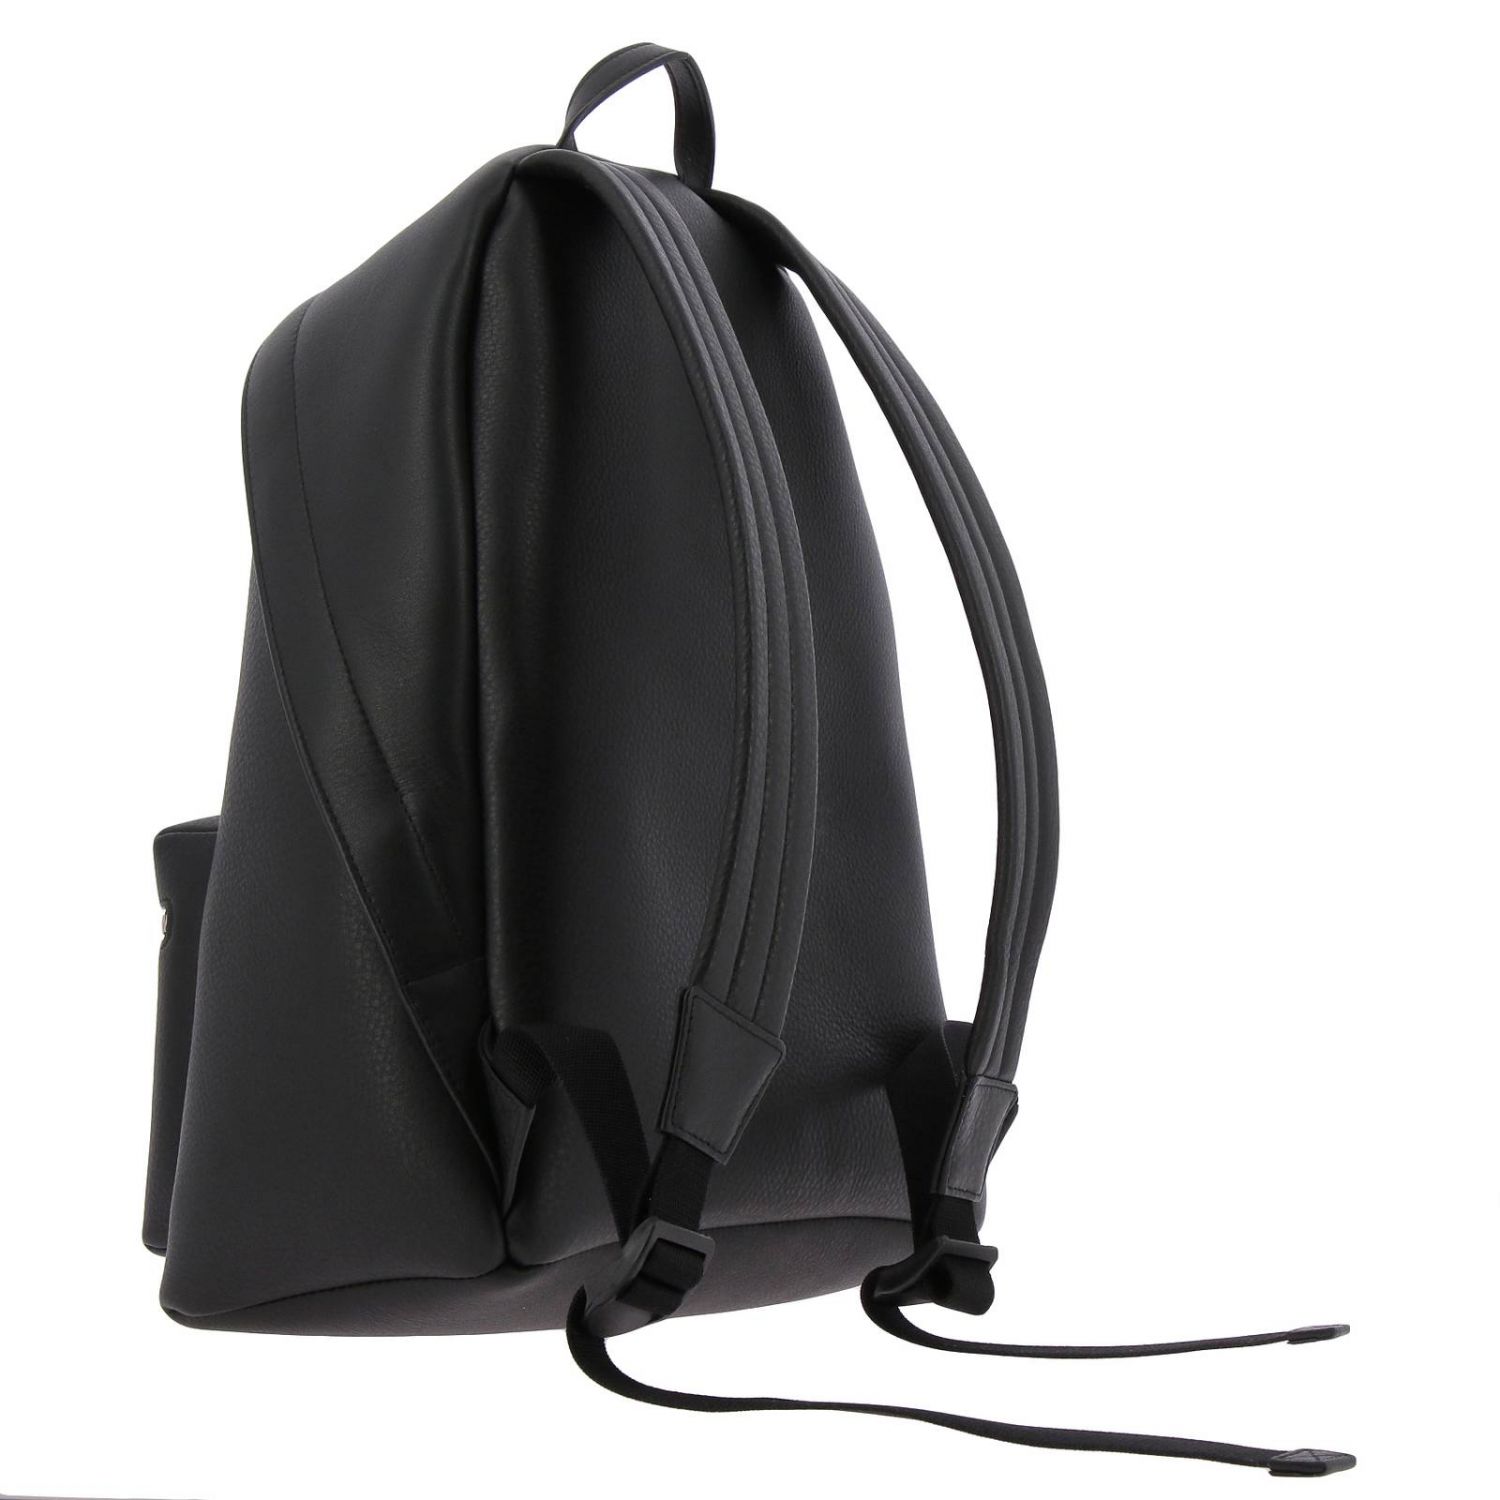 Balenciaga Outlet: Shoulder bag women - Black | Backpack Balenciaga ...